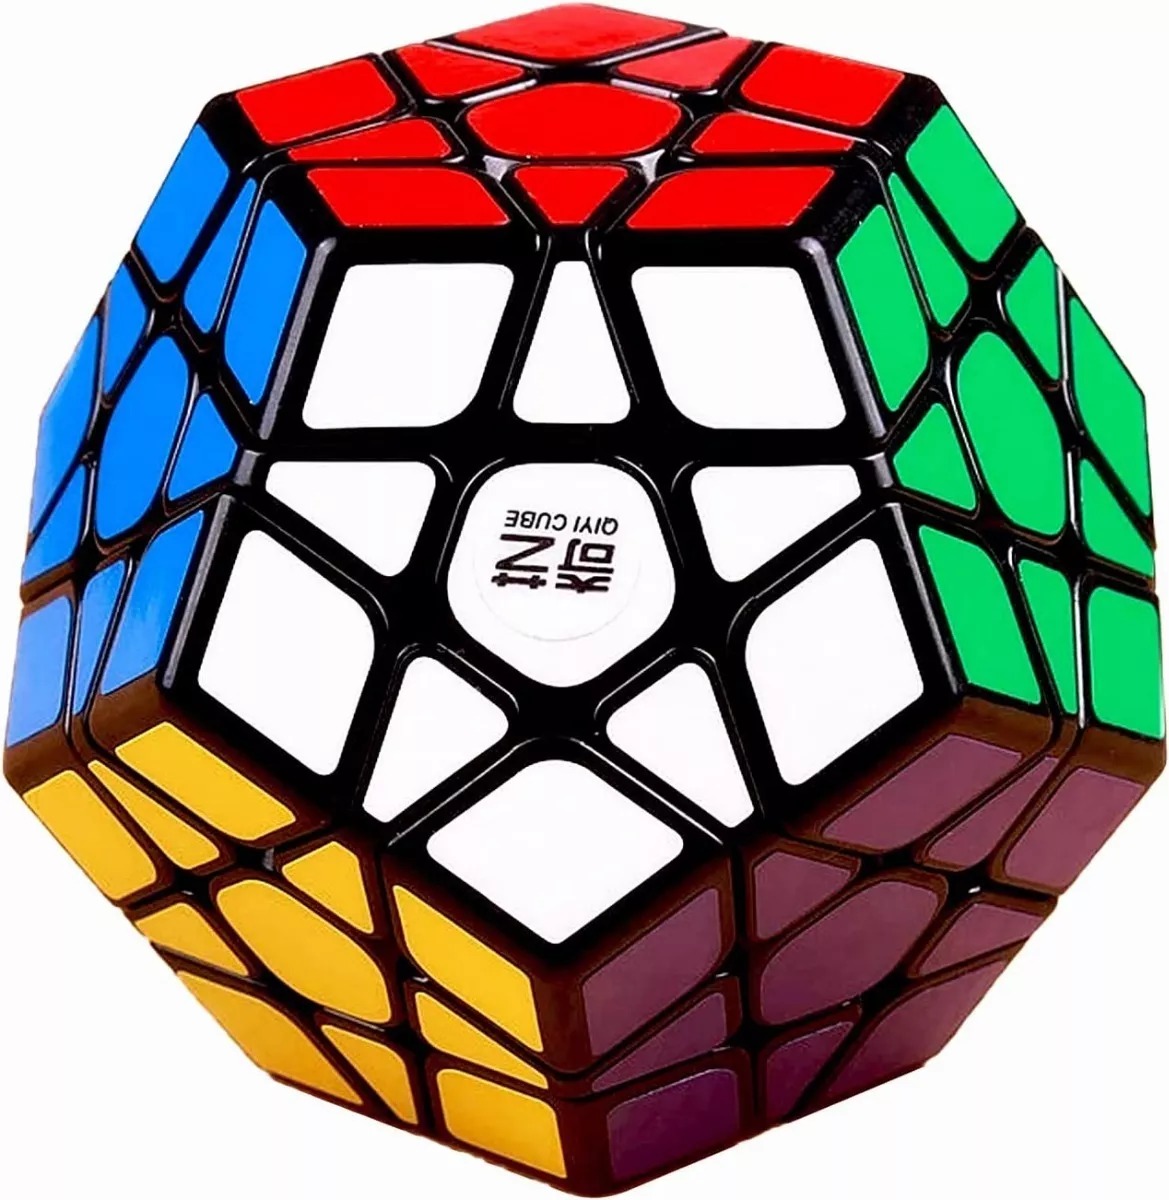 Cubo Magico Pentagonal,juego Cerebral